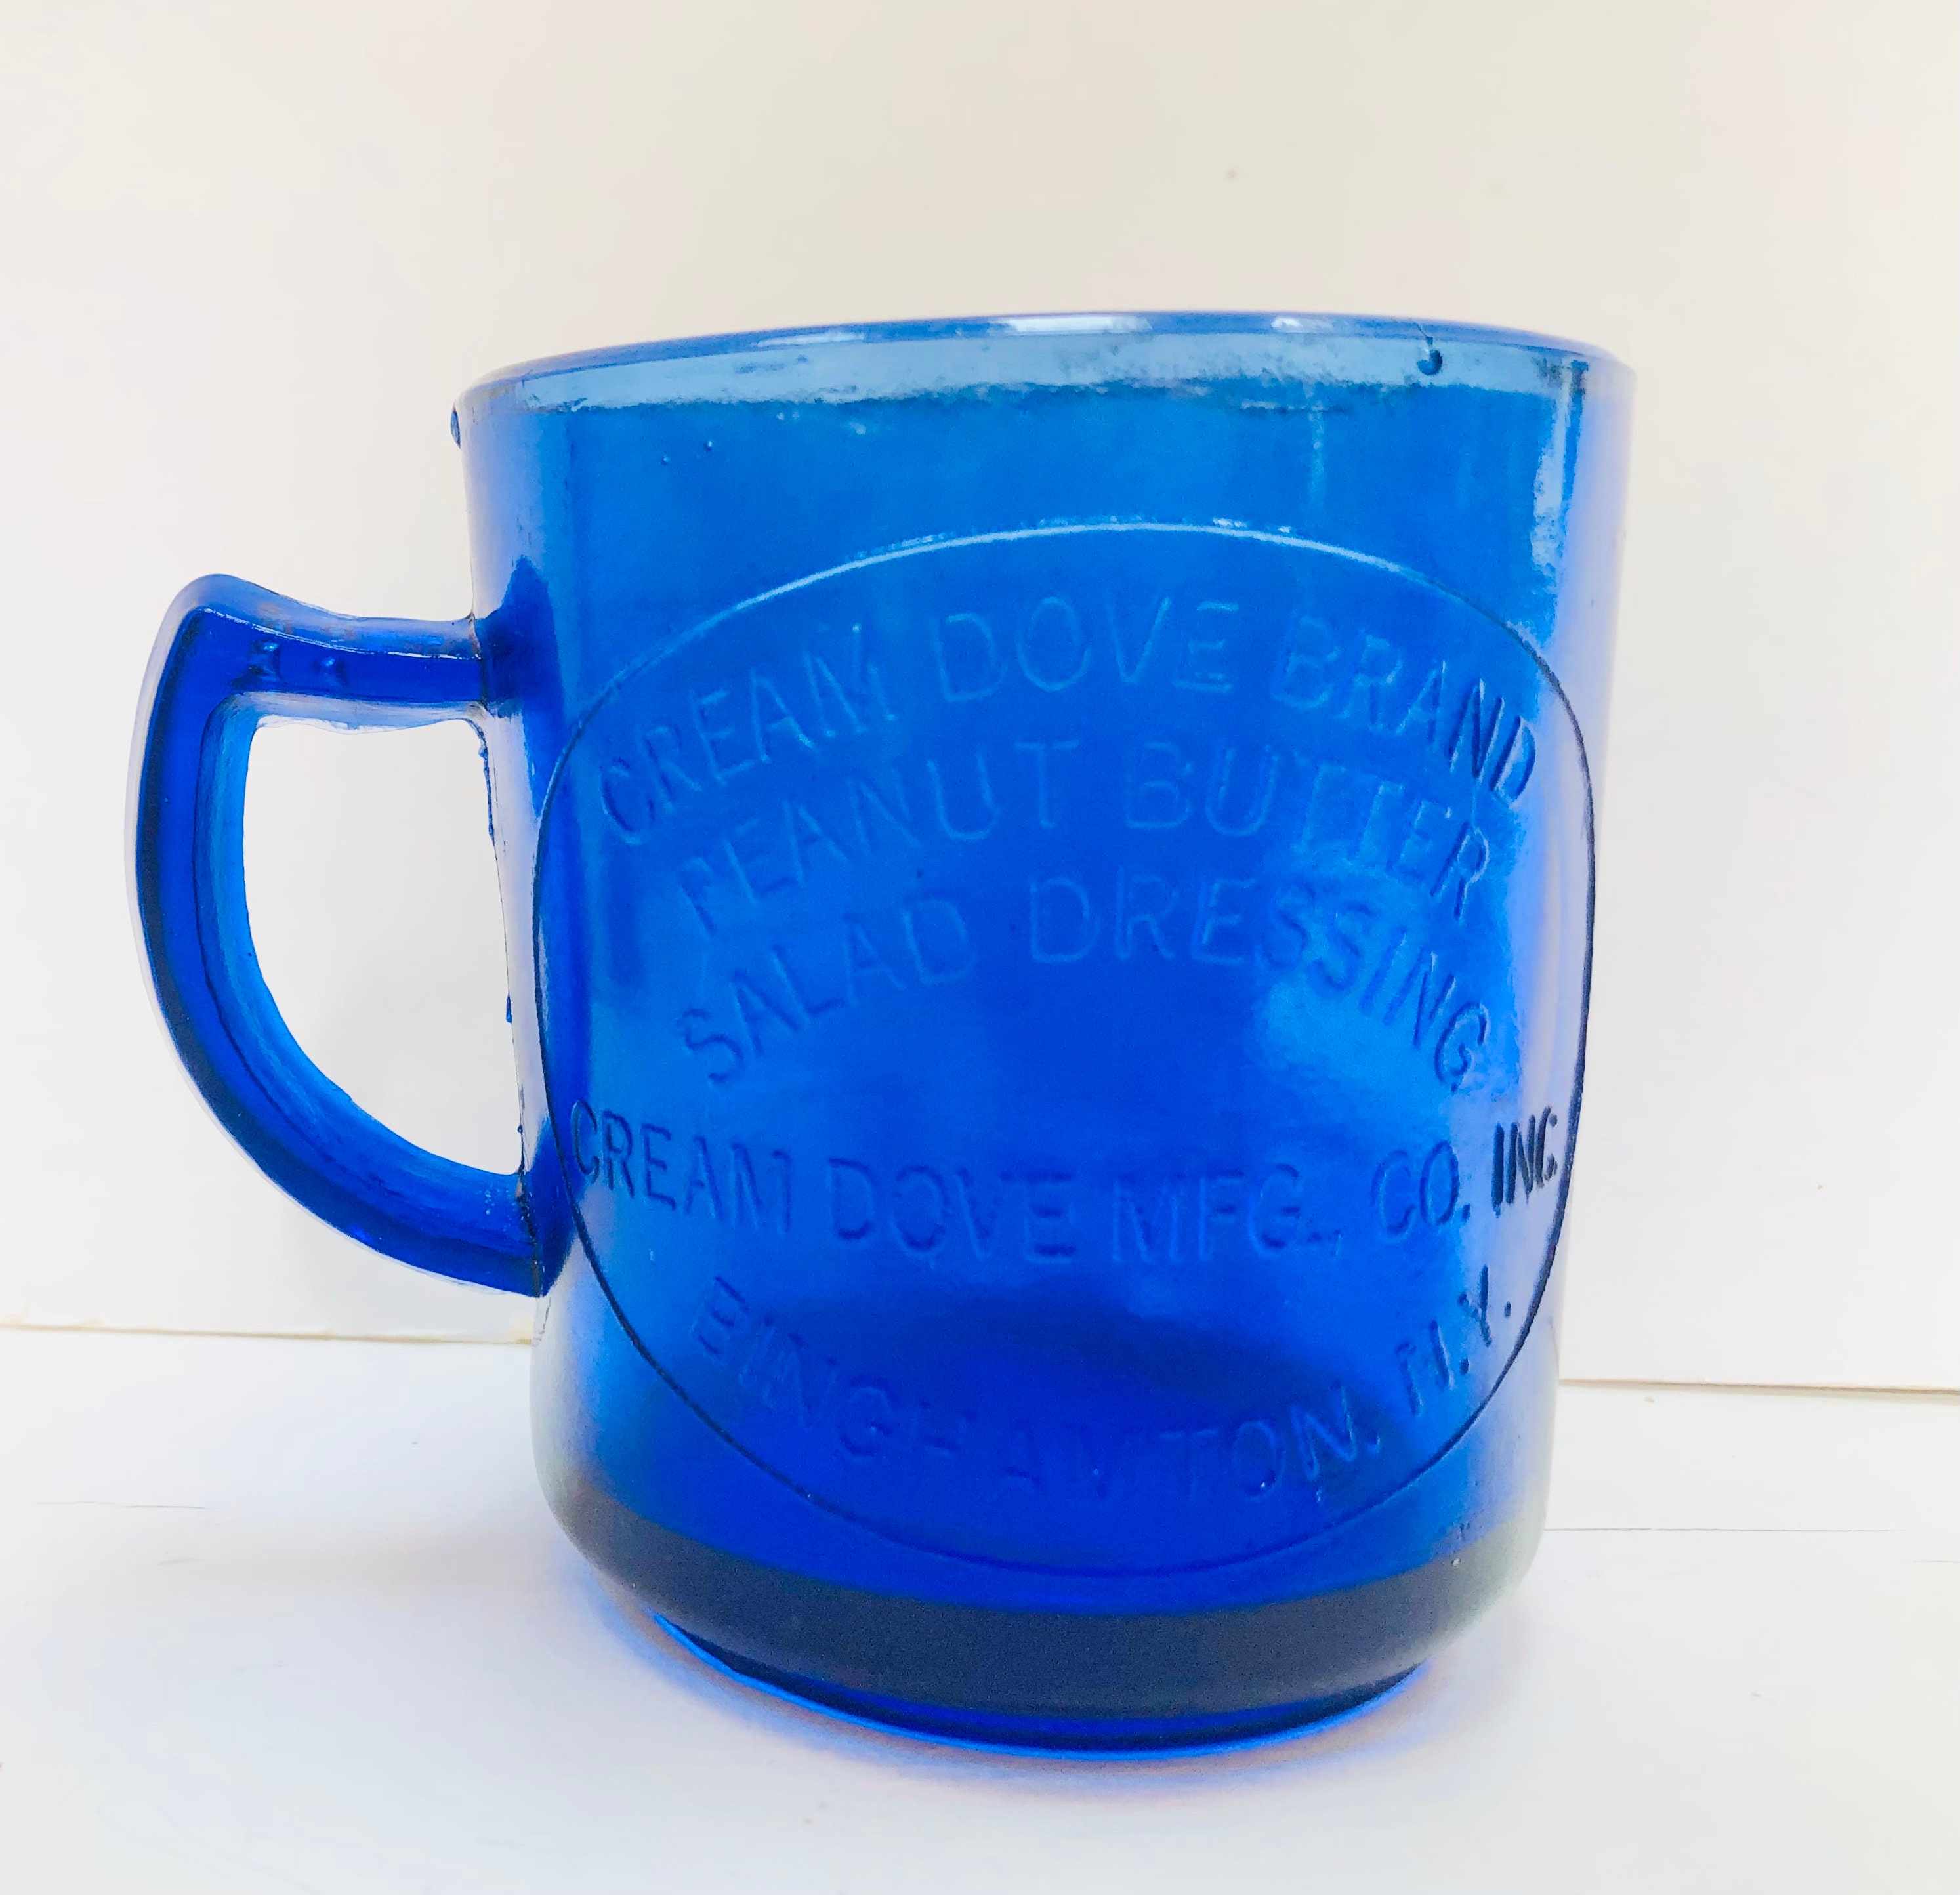 Home-X cobalt-Blue Measuring Cup, Vintage Kitchen Accessories (16oz) 6 L x 4 3/4 W x 3 1/2 H